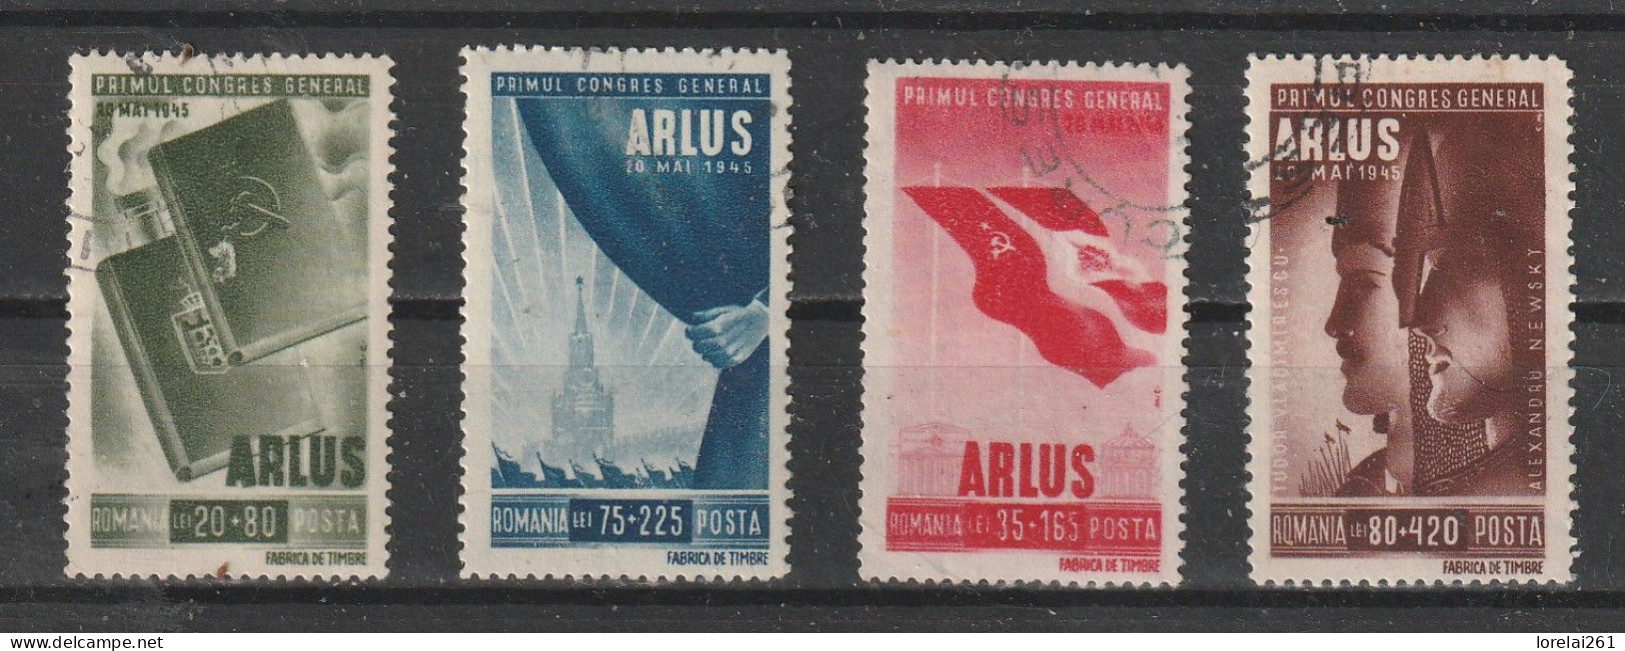 1945 - Le Premier Congrès De L'ARLUS Mi No 855/858 - Usati